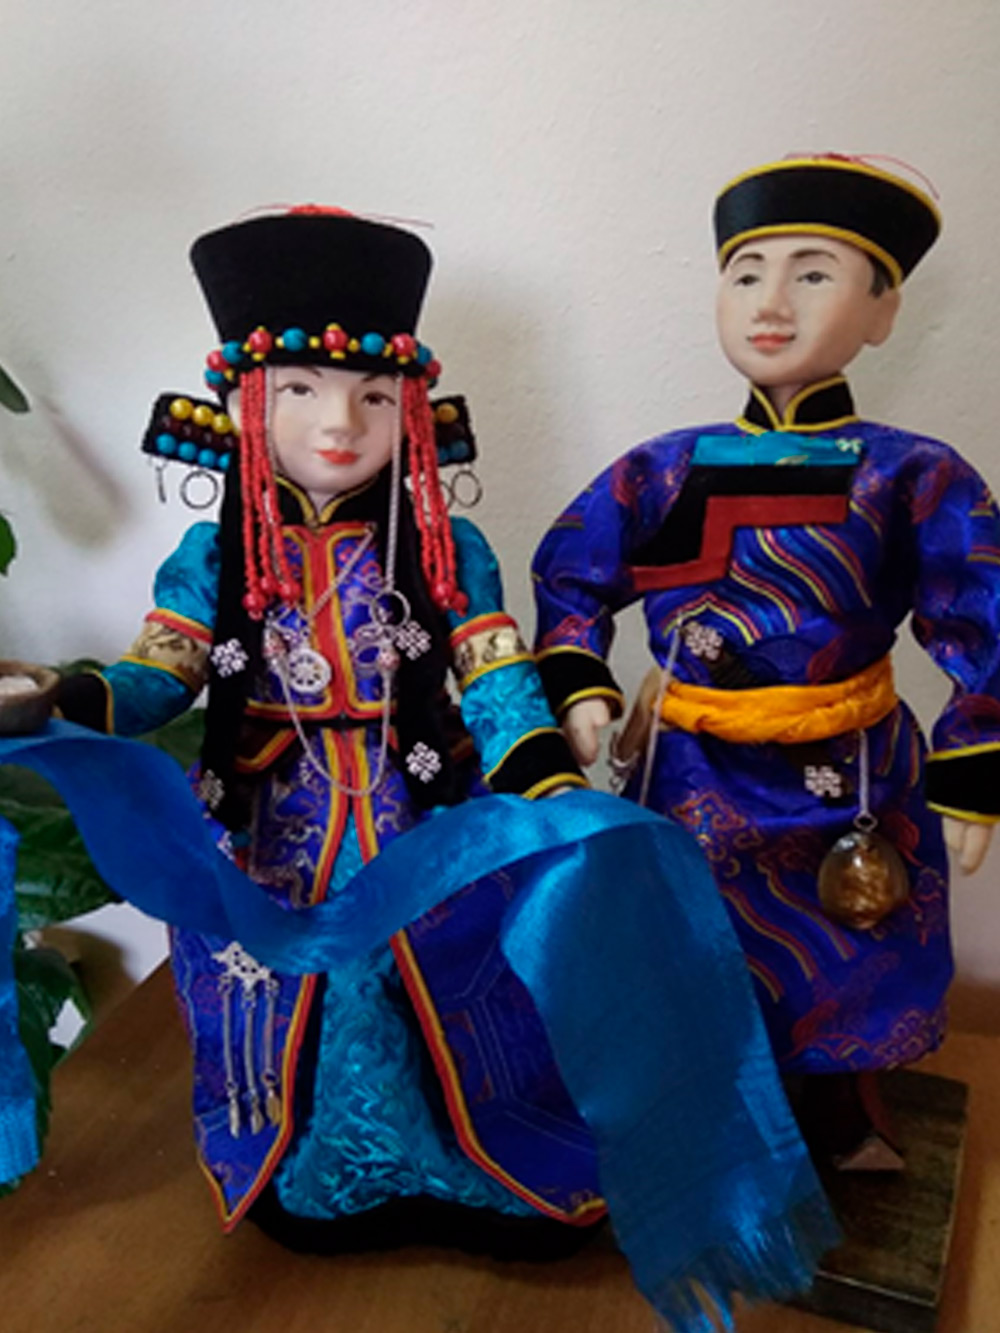 Сувенирные
  куклы в традиционной одежде из полимерной глины
  
  
  Материал: глина,
  текстиль, шитье, лепка, роспись